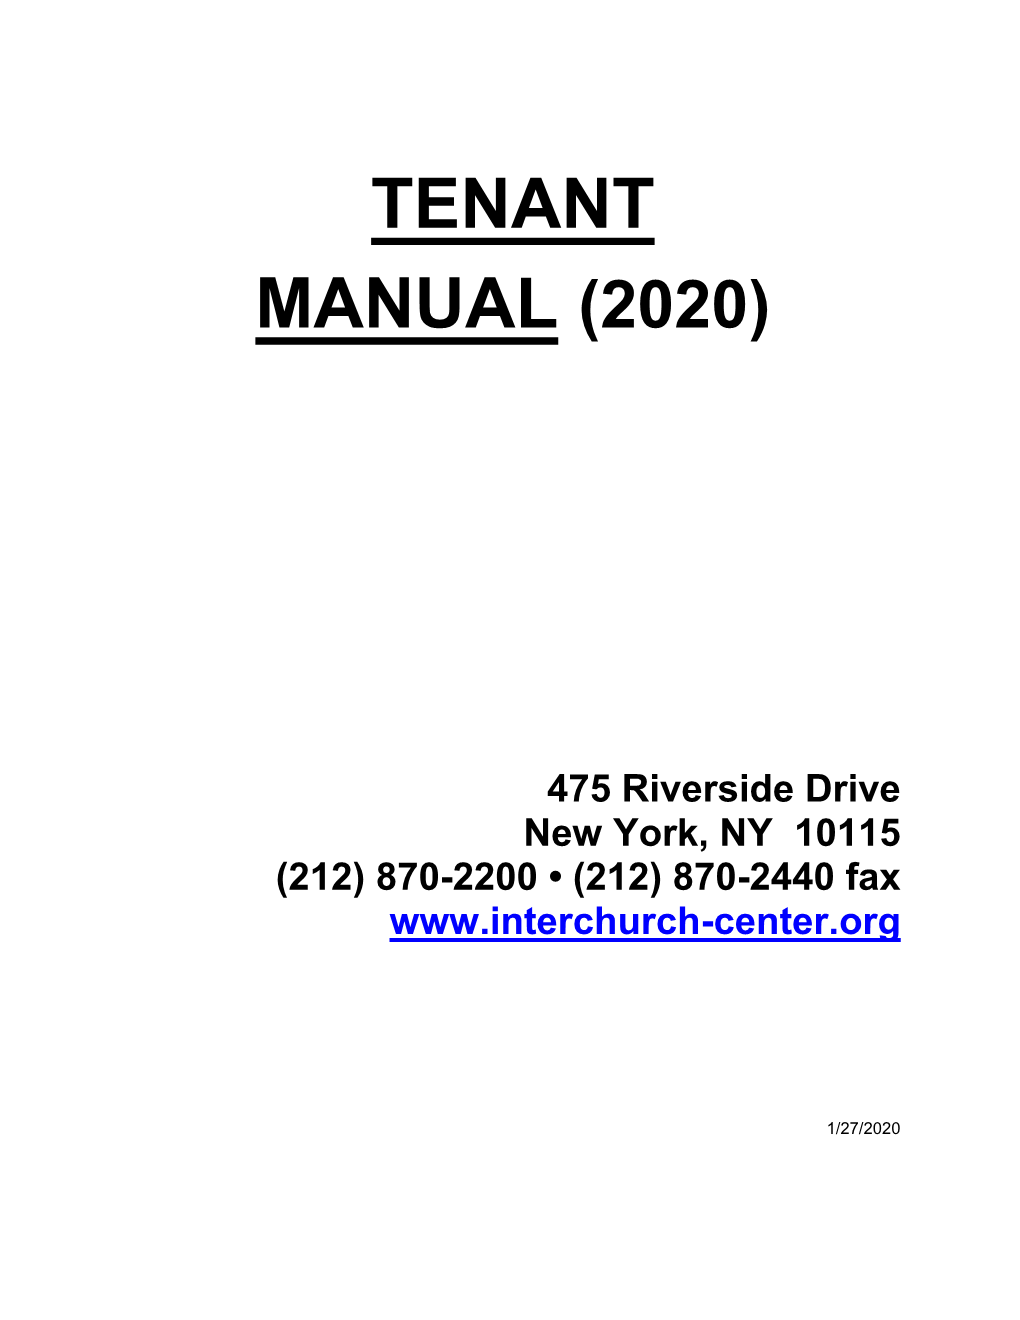 Tenant Manual (2020)